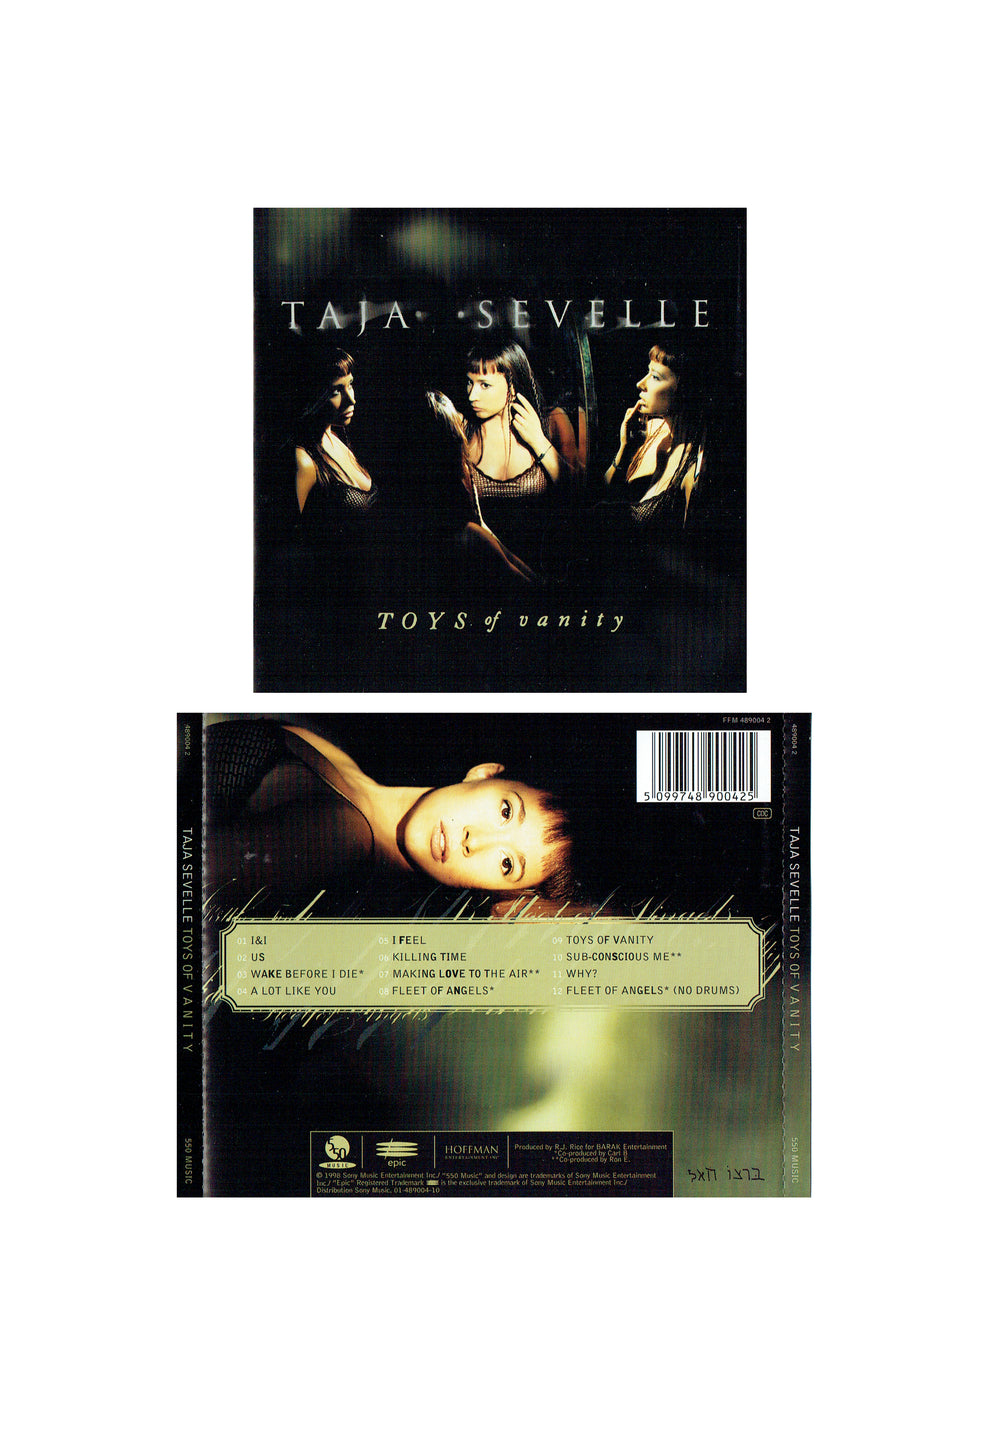 Prince – Taja Sevelle Toys Of Vanity CD Album Europe Preloved: 1998